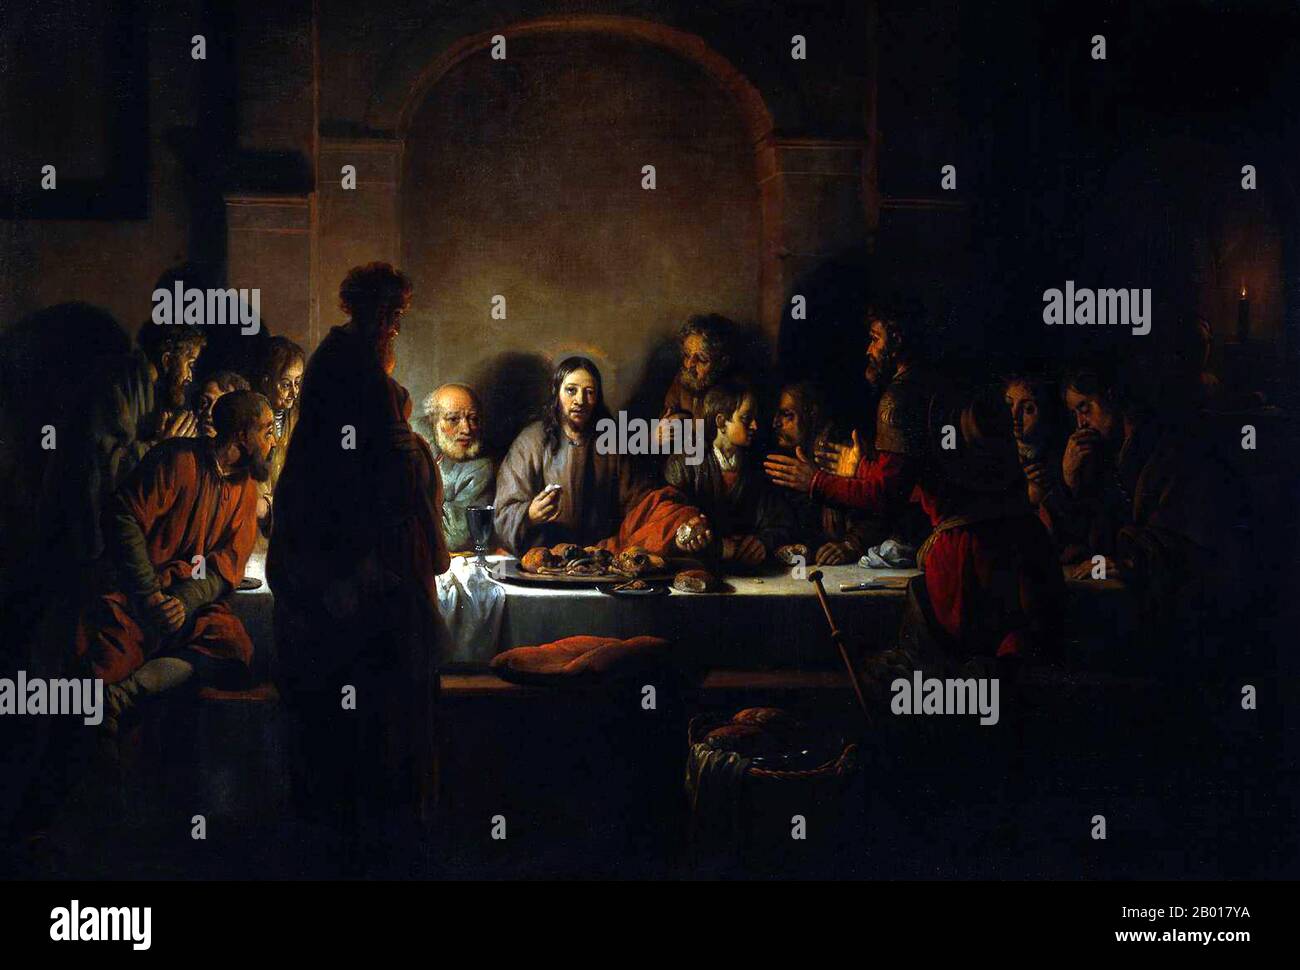 Países Bajos: 'La última cena'. Óleo sobre lienzo de Gerbrand van den Eeckhout (19 de agosto de 1621 - 29 de septiembre de 1674), 1664. Van den Eeckhout era un estudiante de Rembrandt y, como su mentor, prefería usar colores oscuros y contrastes con la luz. En esta obra maestra, muestra a Jesucristo en el centro, iluminado por la luz de las velas y un halo. Jesús rompe el pan para compartir con sus discípulos que parecen estar ansiosos y profundamente en discusión. Ellos son engañados porque Cristo acaba de declarar que uno de ellos lo traicionaría. Jesús parece estar mirando a Judas, quien está de pie en primer plano. Foto de stock